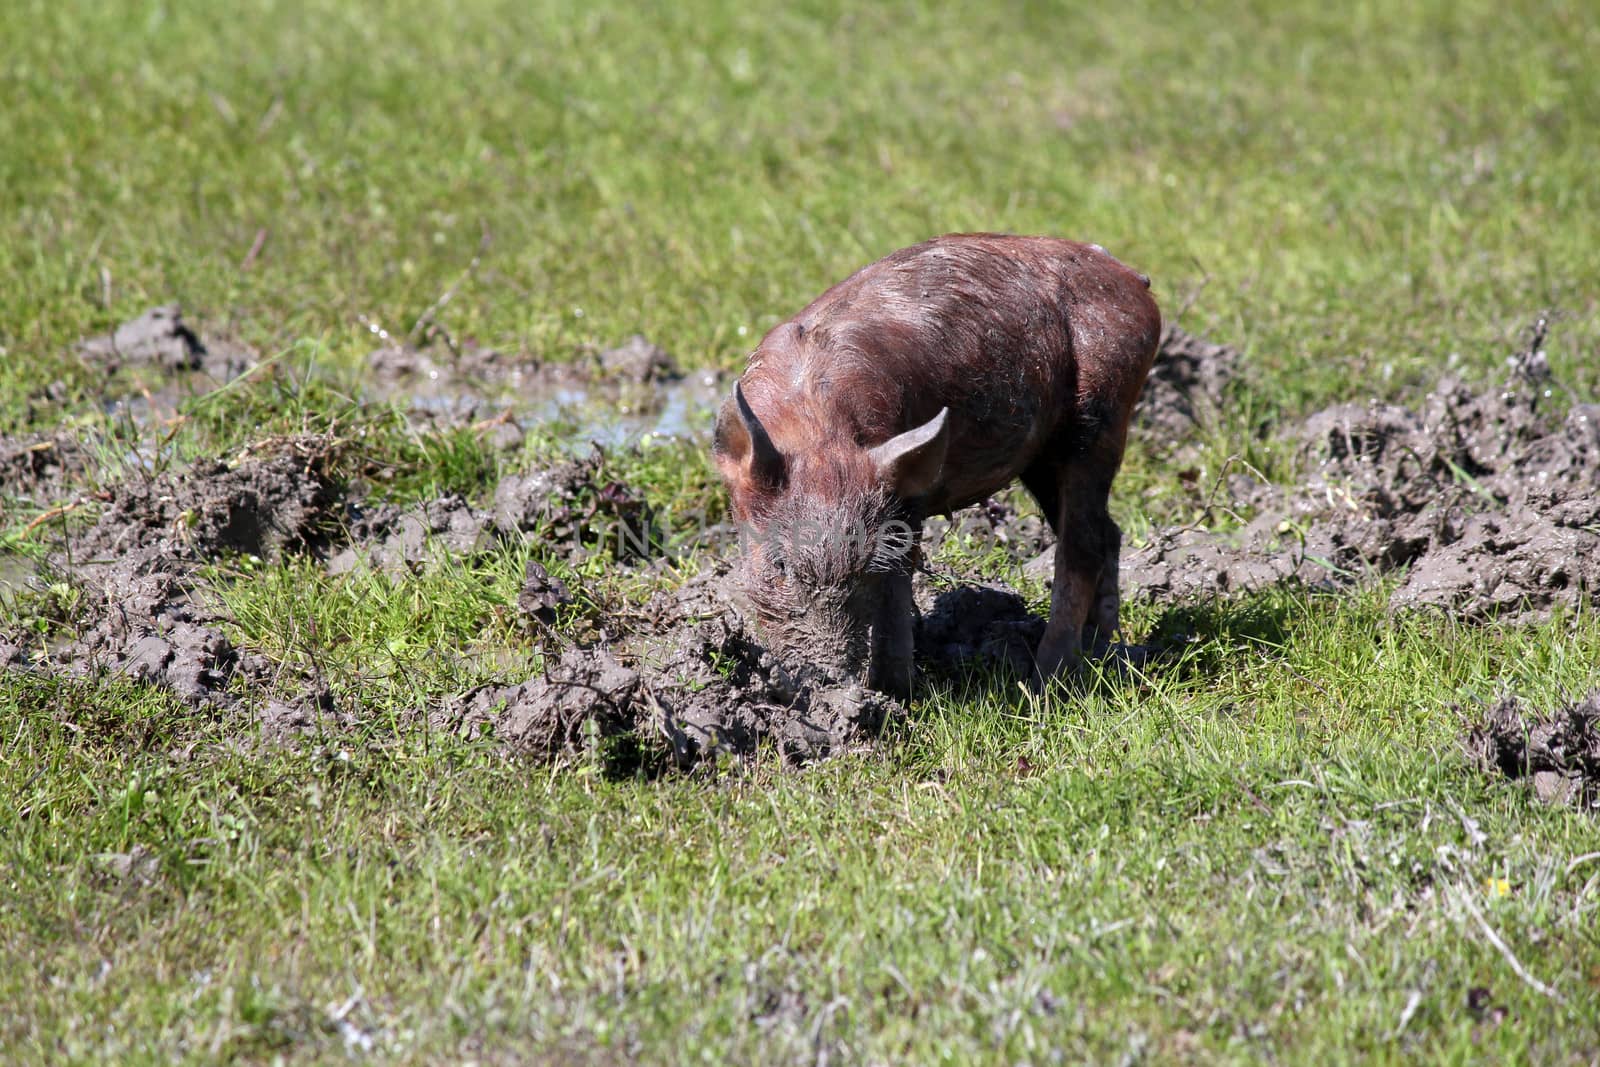 little pig in a mud farm scene by goce